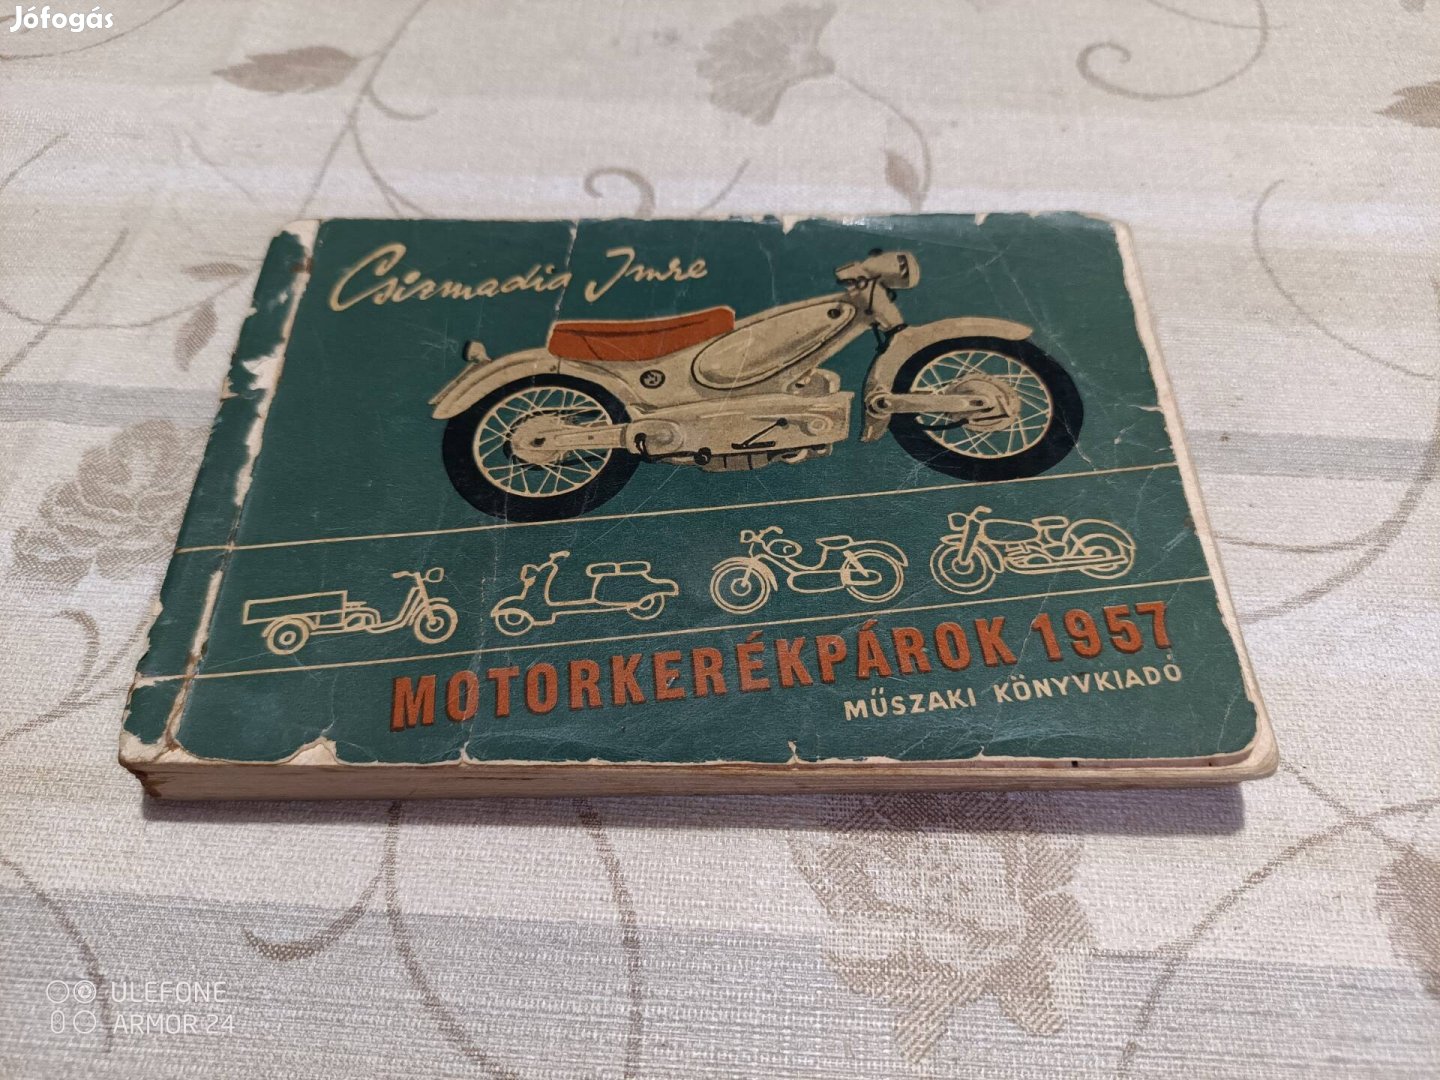 Motorkerékparok 1957 típusismertető könyv